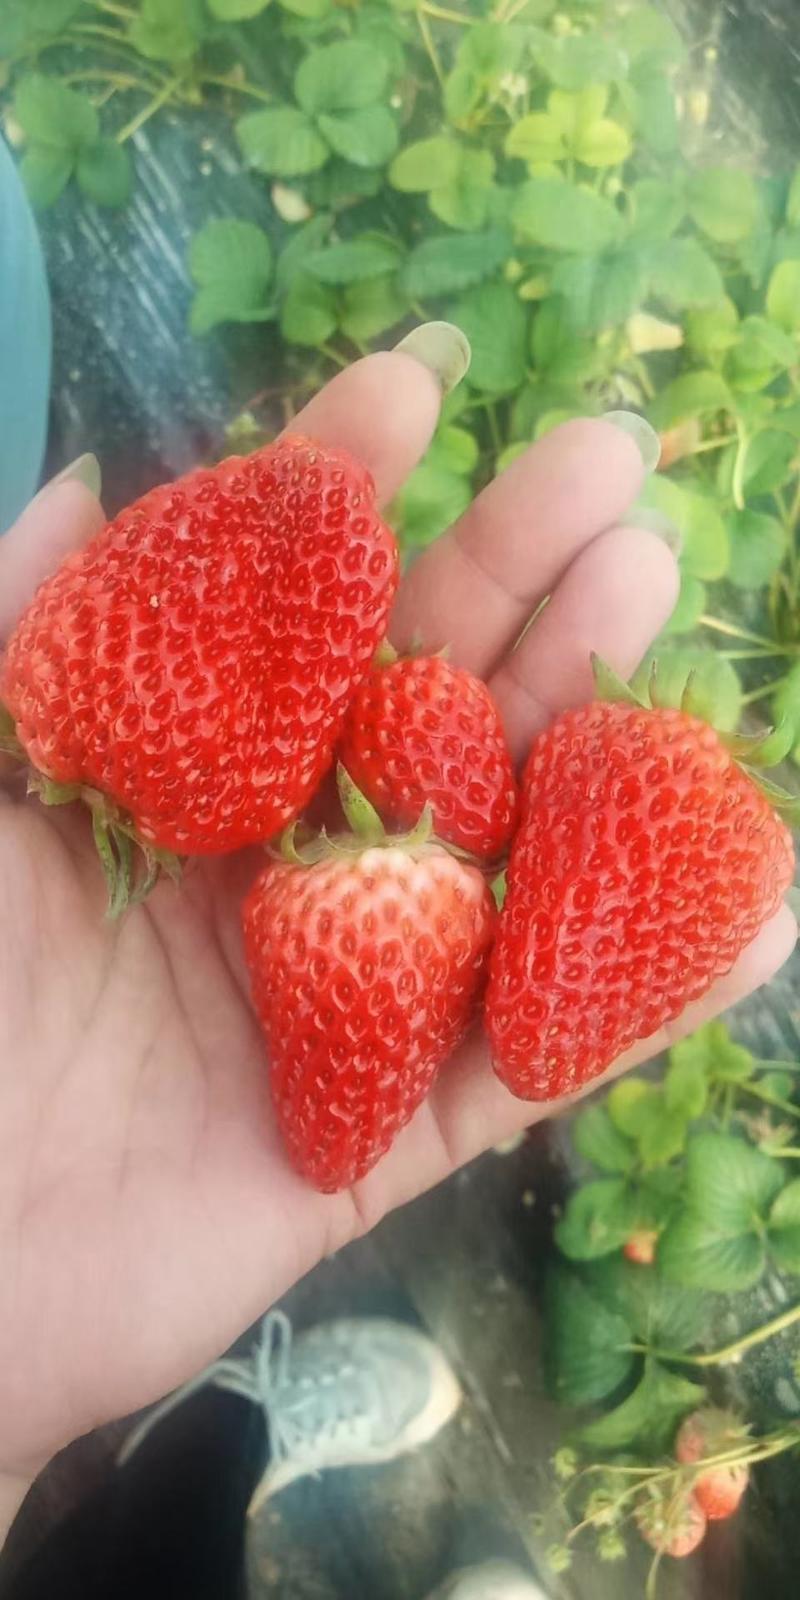 菏泽红颜草莓基地批发采购，欢迎全国采购商前来咨询采购。